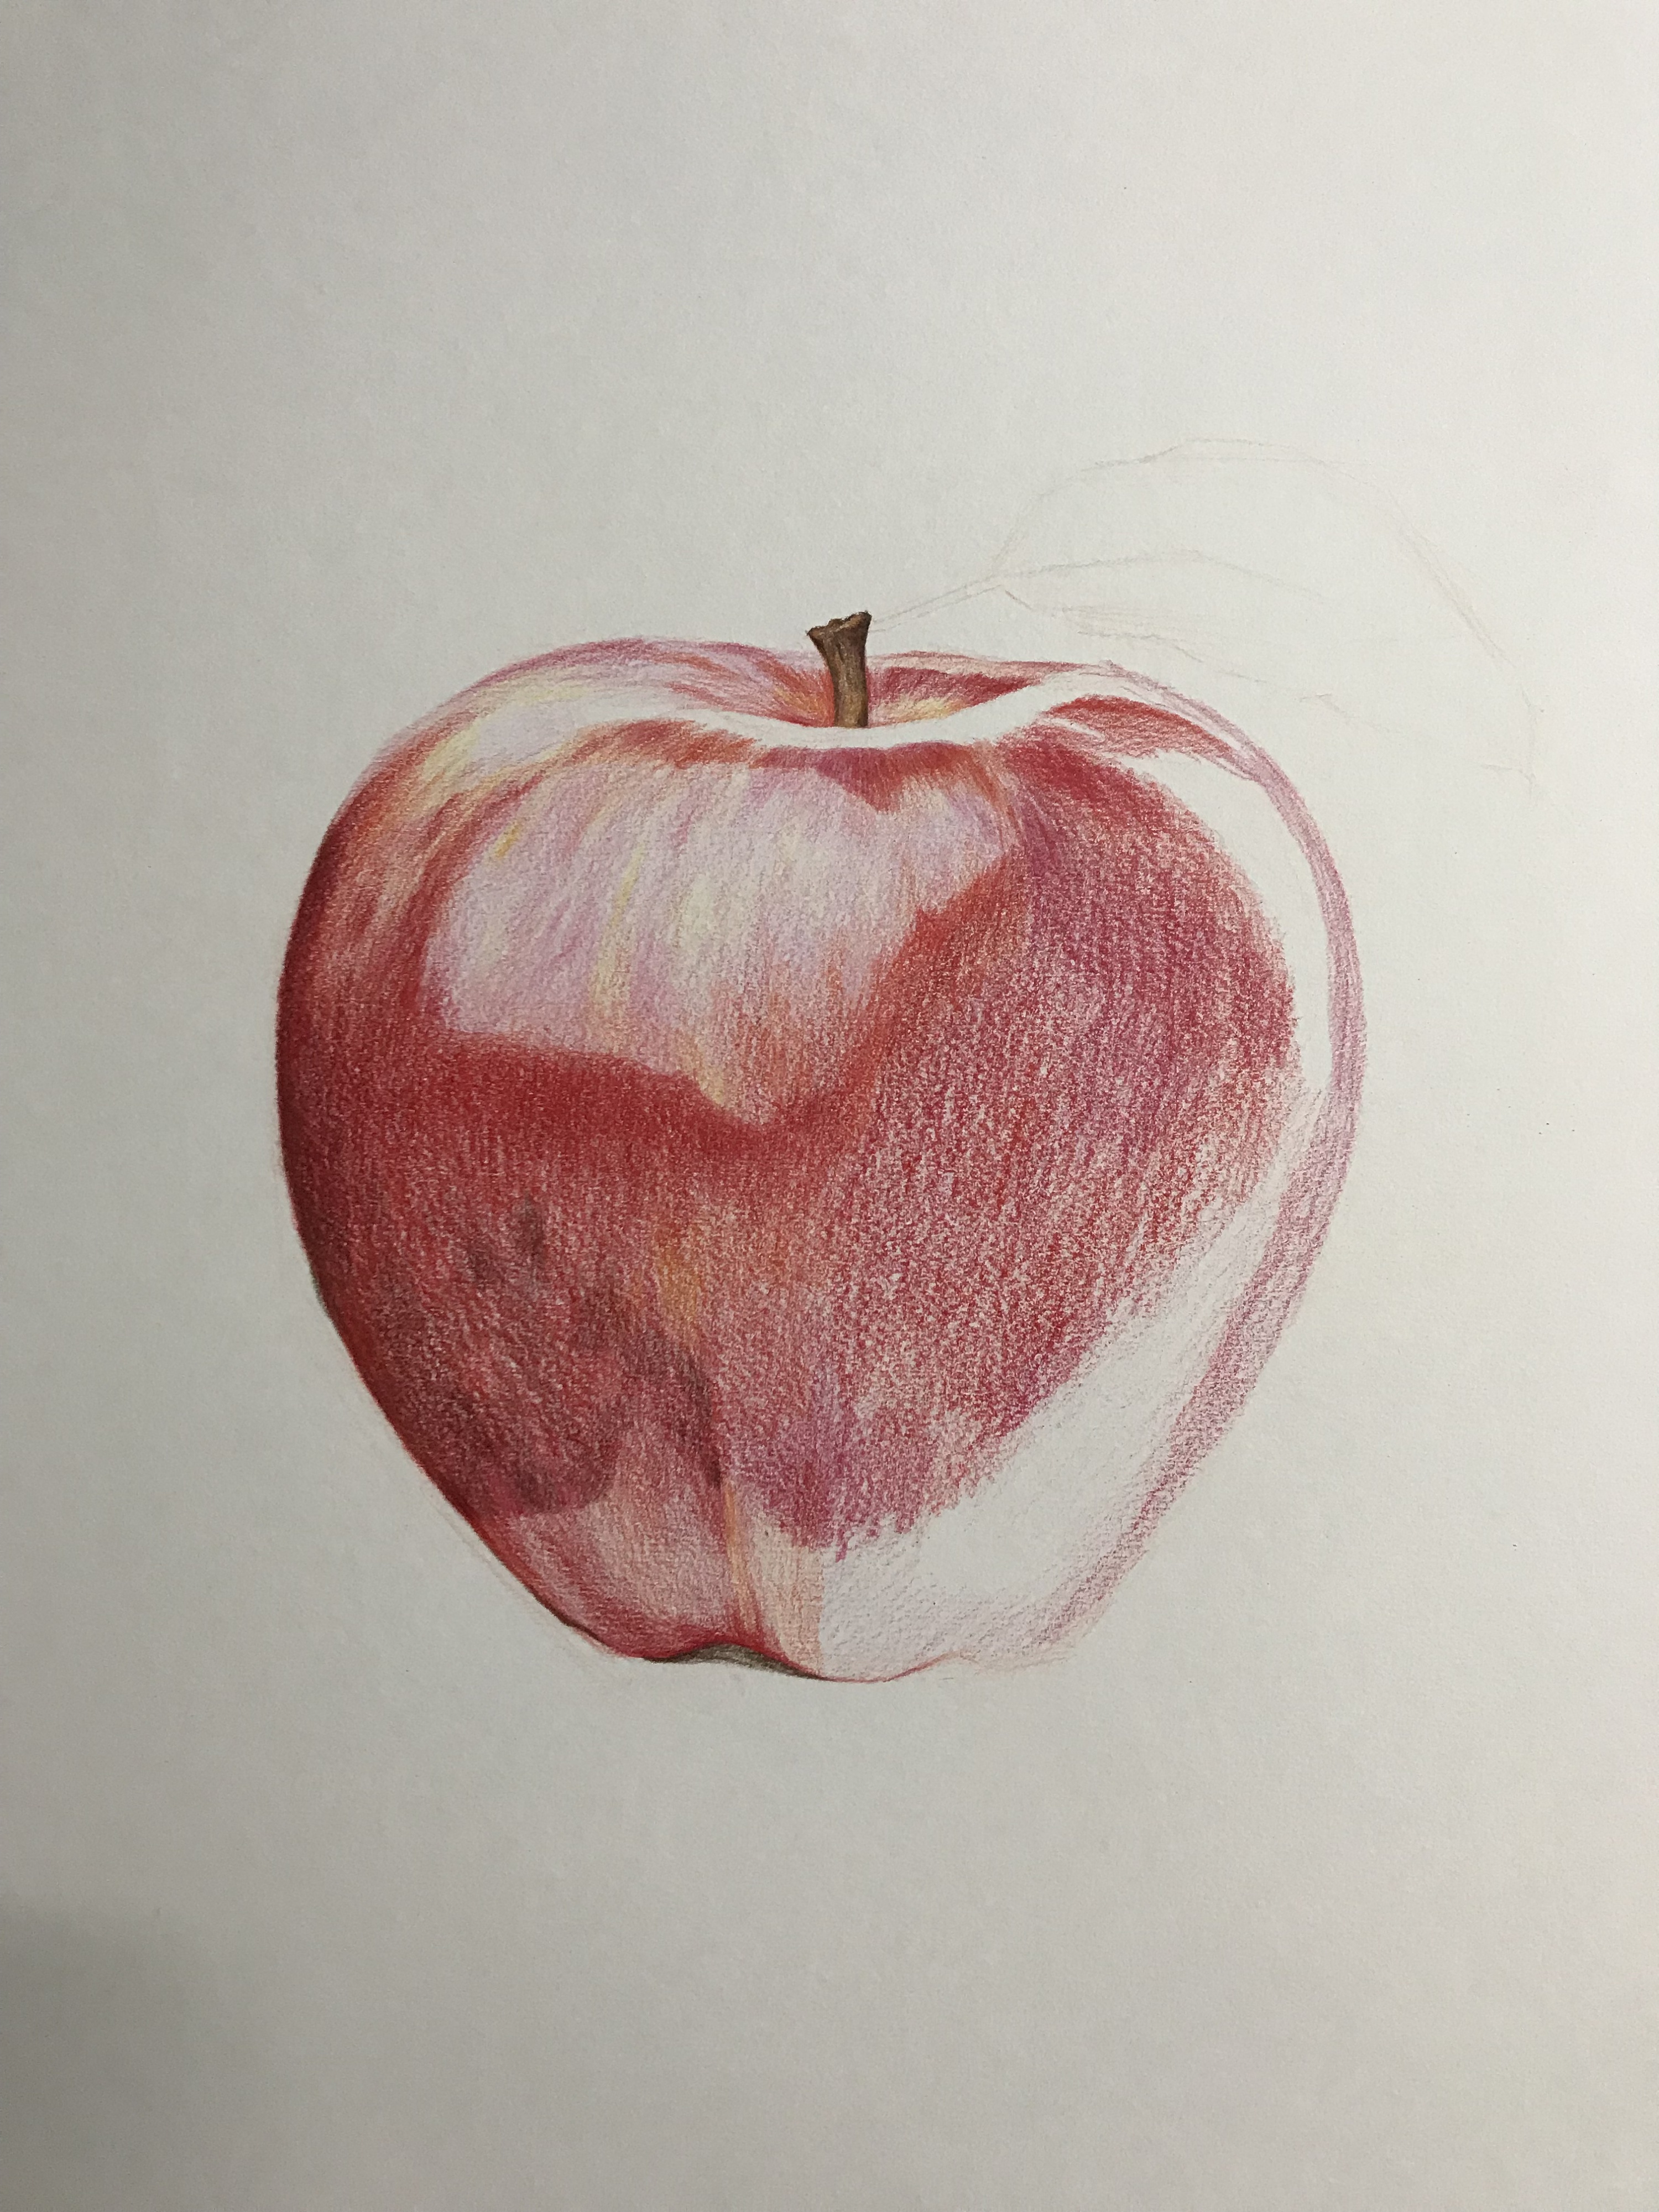 绘艺时光|超详尽的零基础彩铅手绘苹果教程2 - 知乎